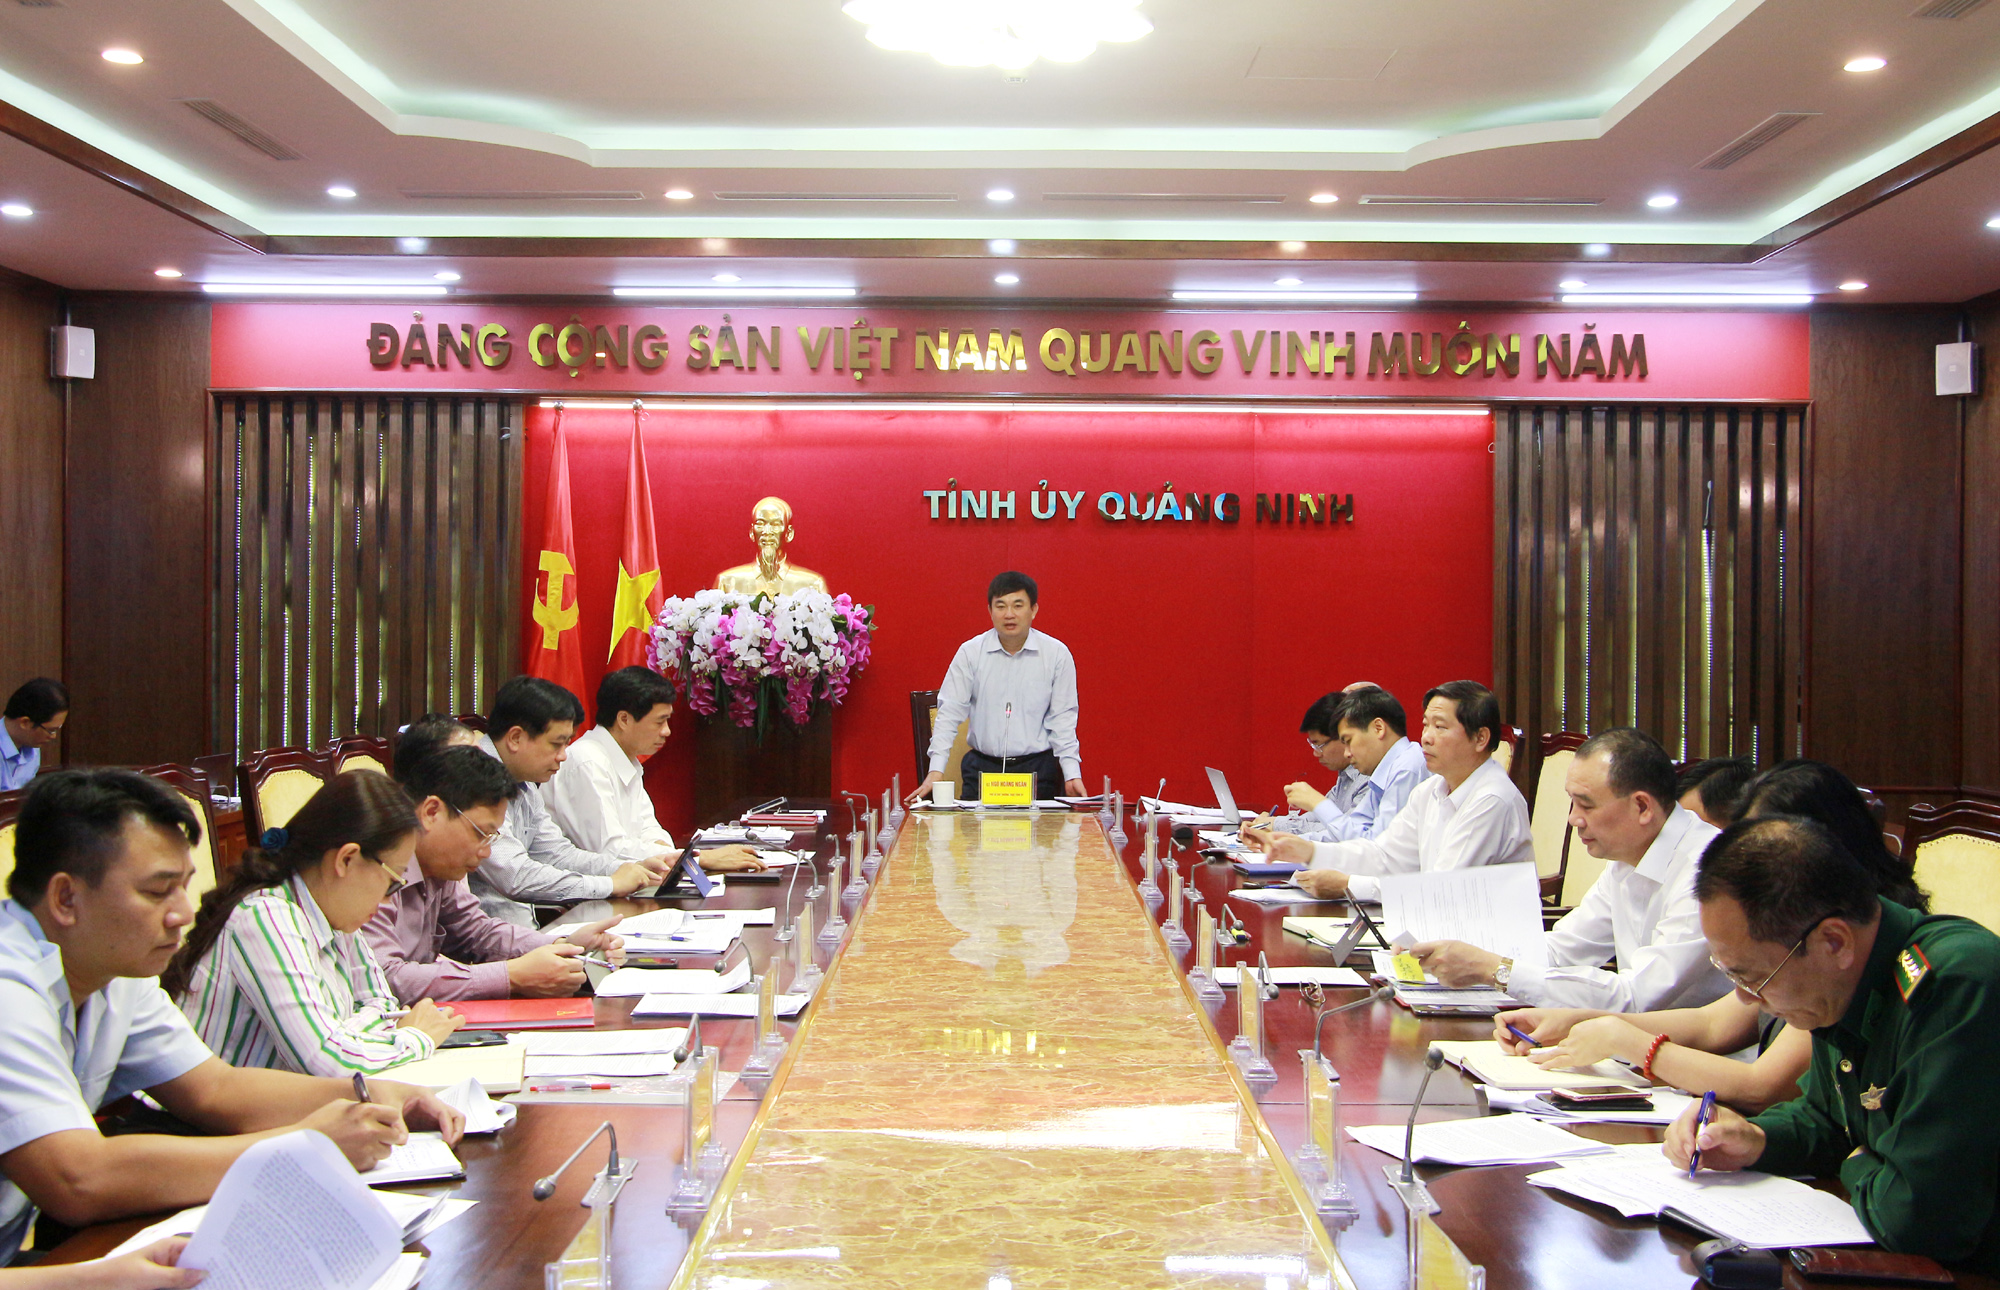 Đồng chí Ngô Hoàng Ngân, Phó Bí thư Thường trực Tỉnh ủy, phát biểu kết luận hội nghị.